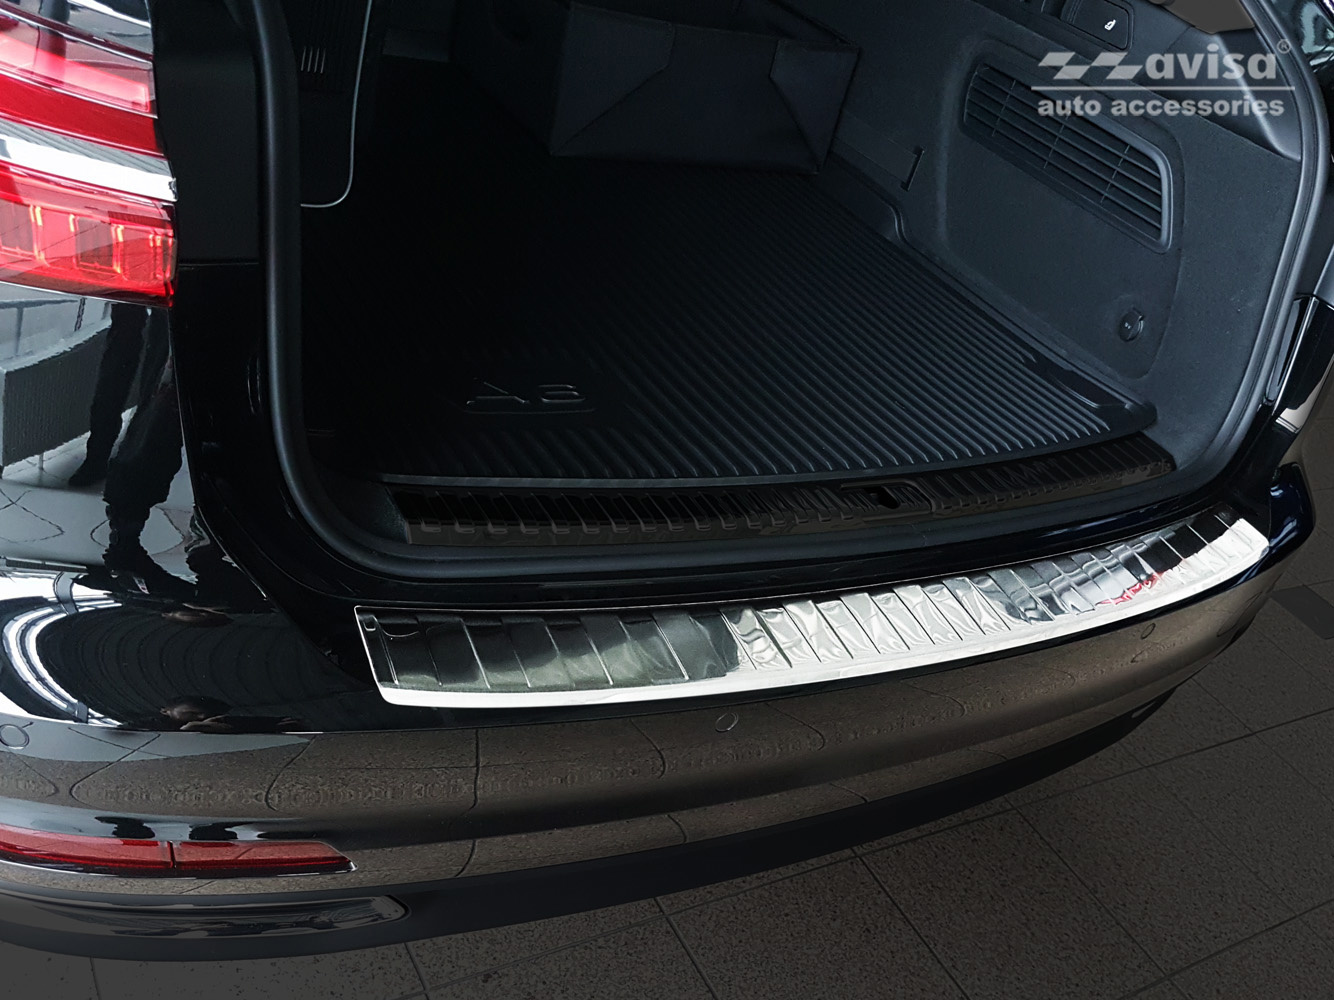 Maluch C8 Audi Ladekantenschutz Autozubehör Avant - für Premium A6